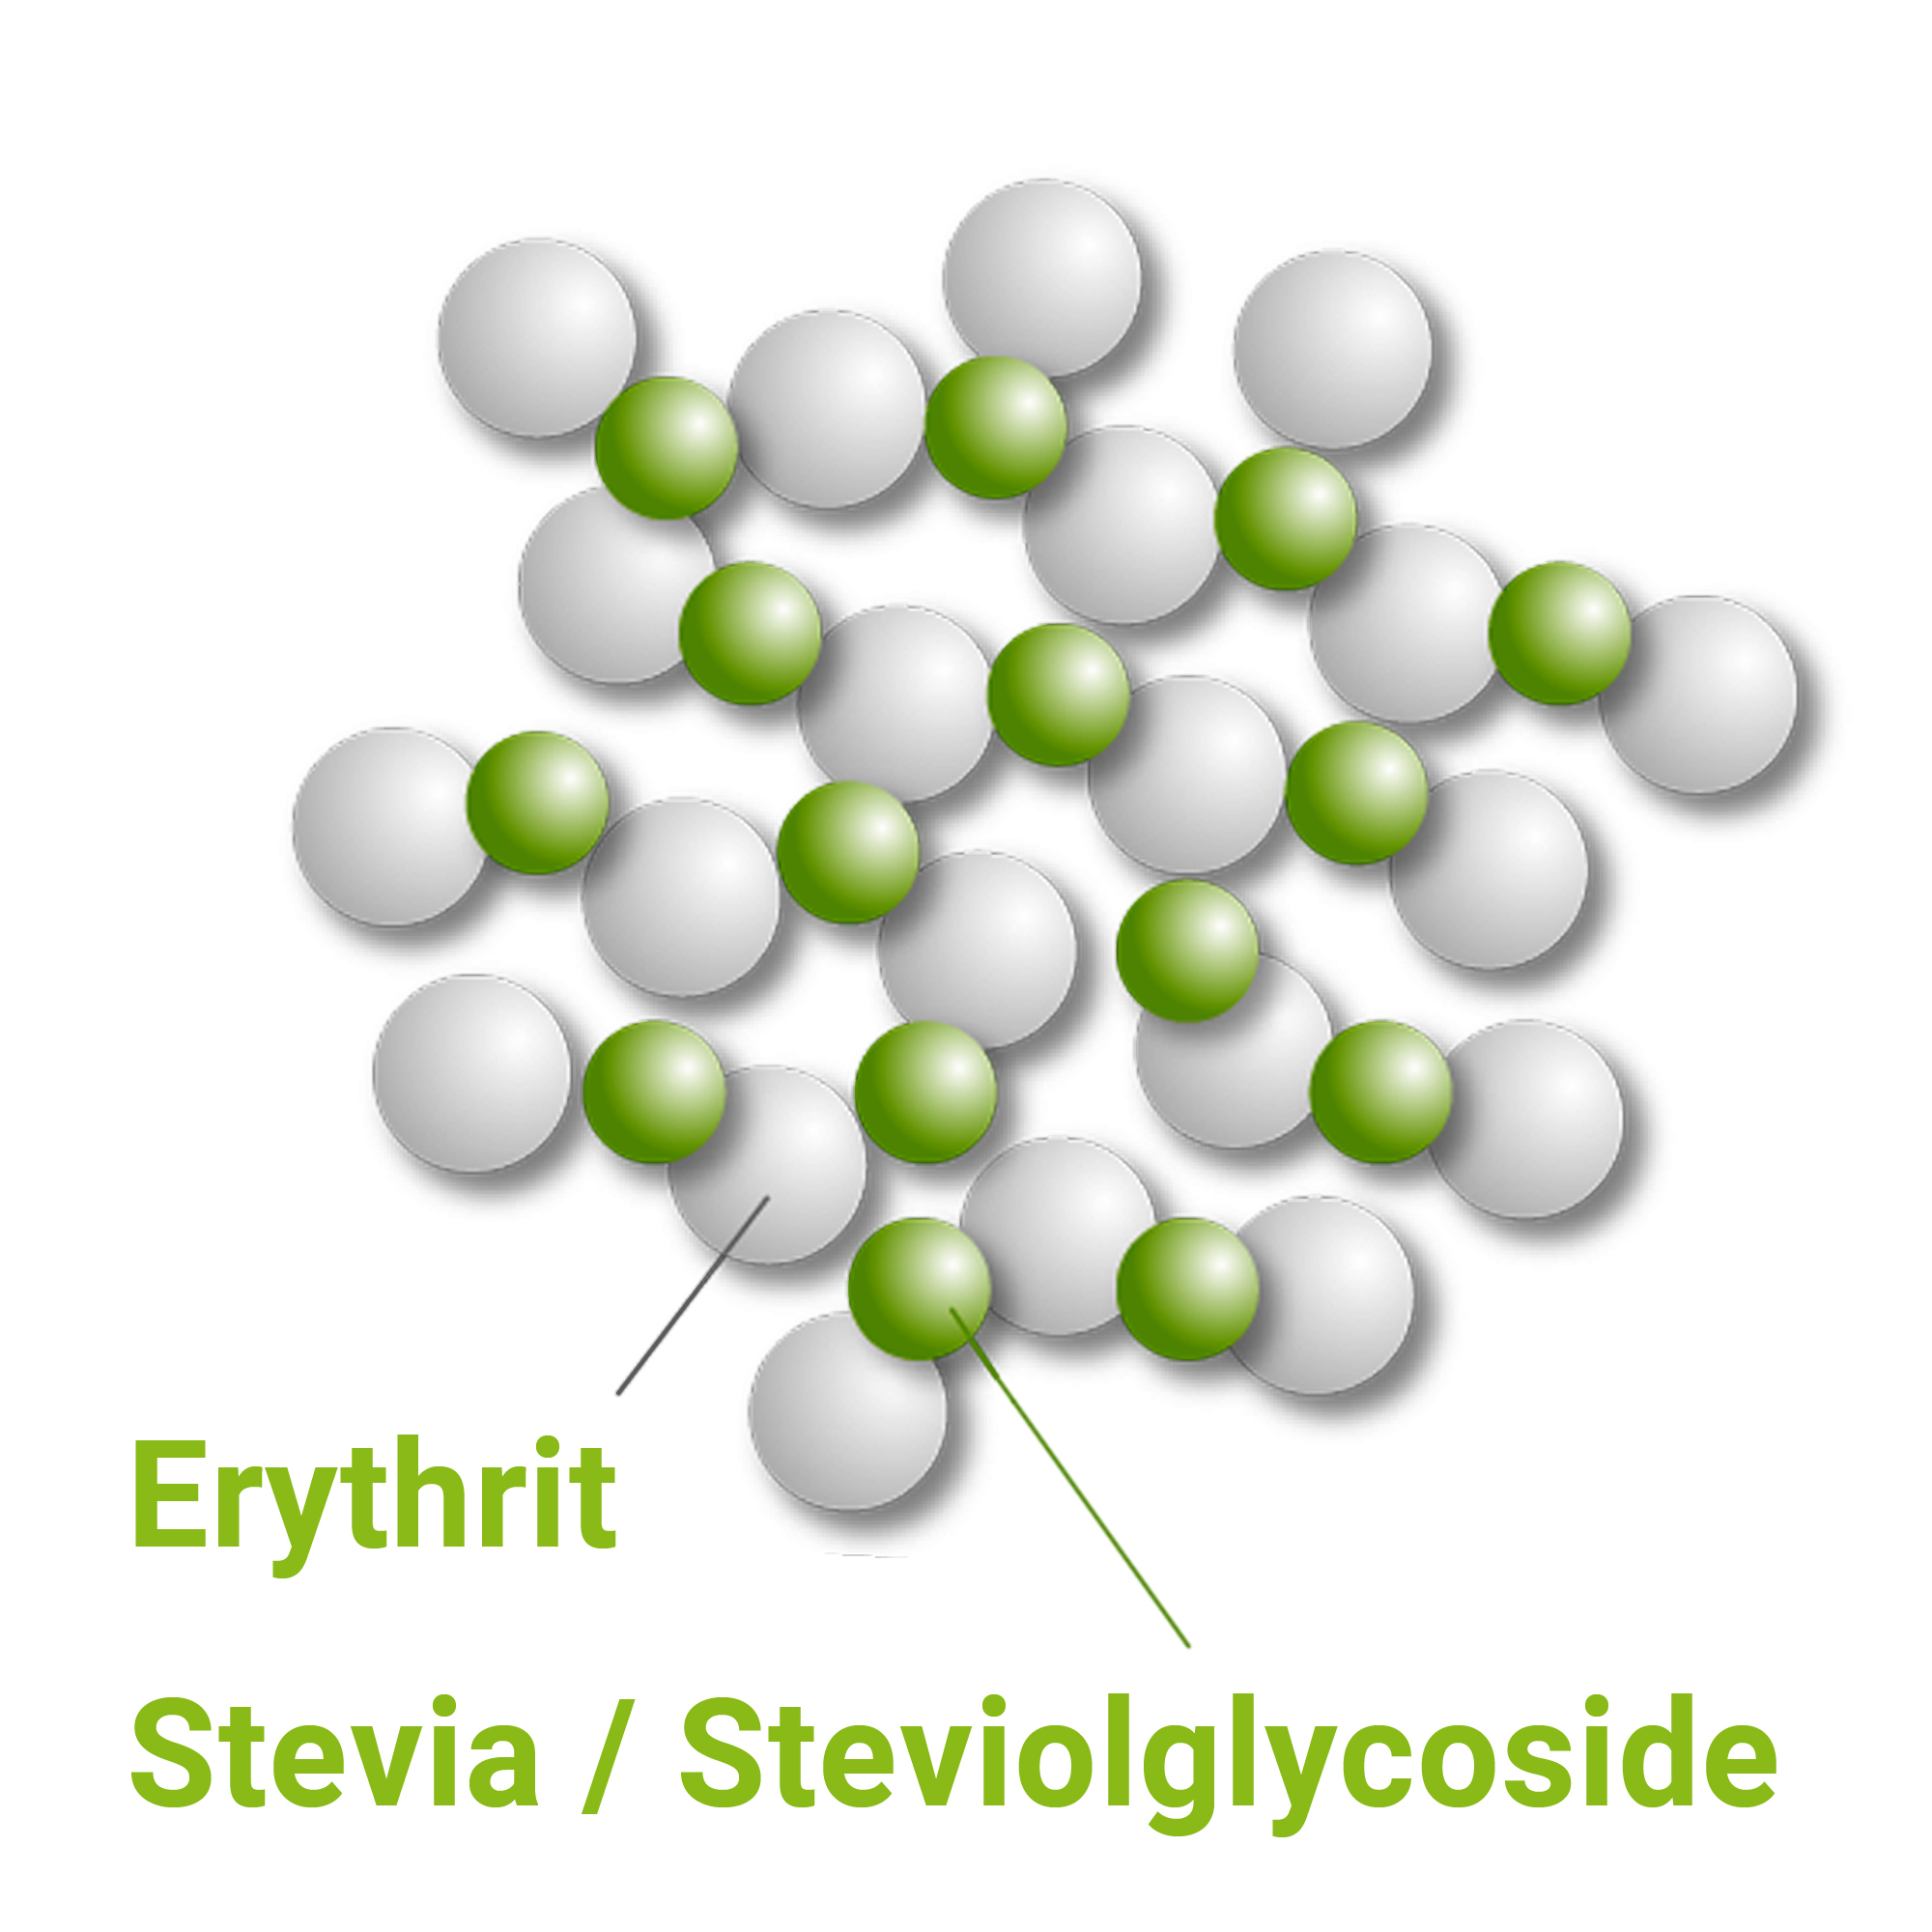 Het mengsel van Stevia en Erythritol is een natuurlijke zoetstof.